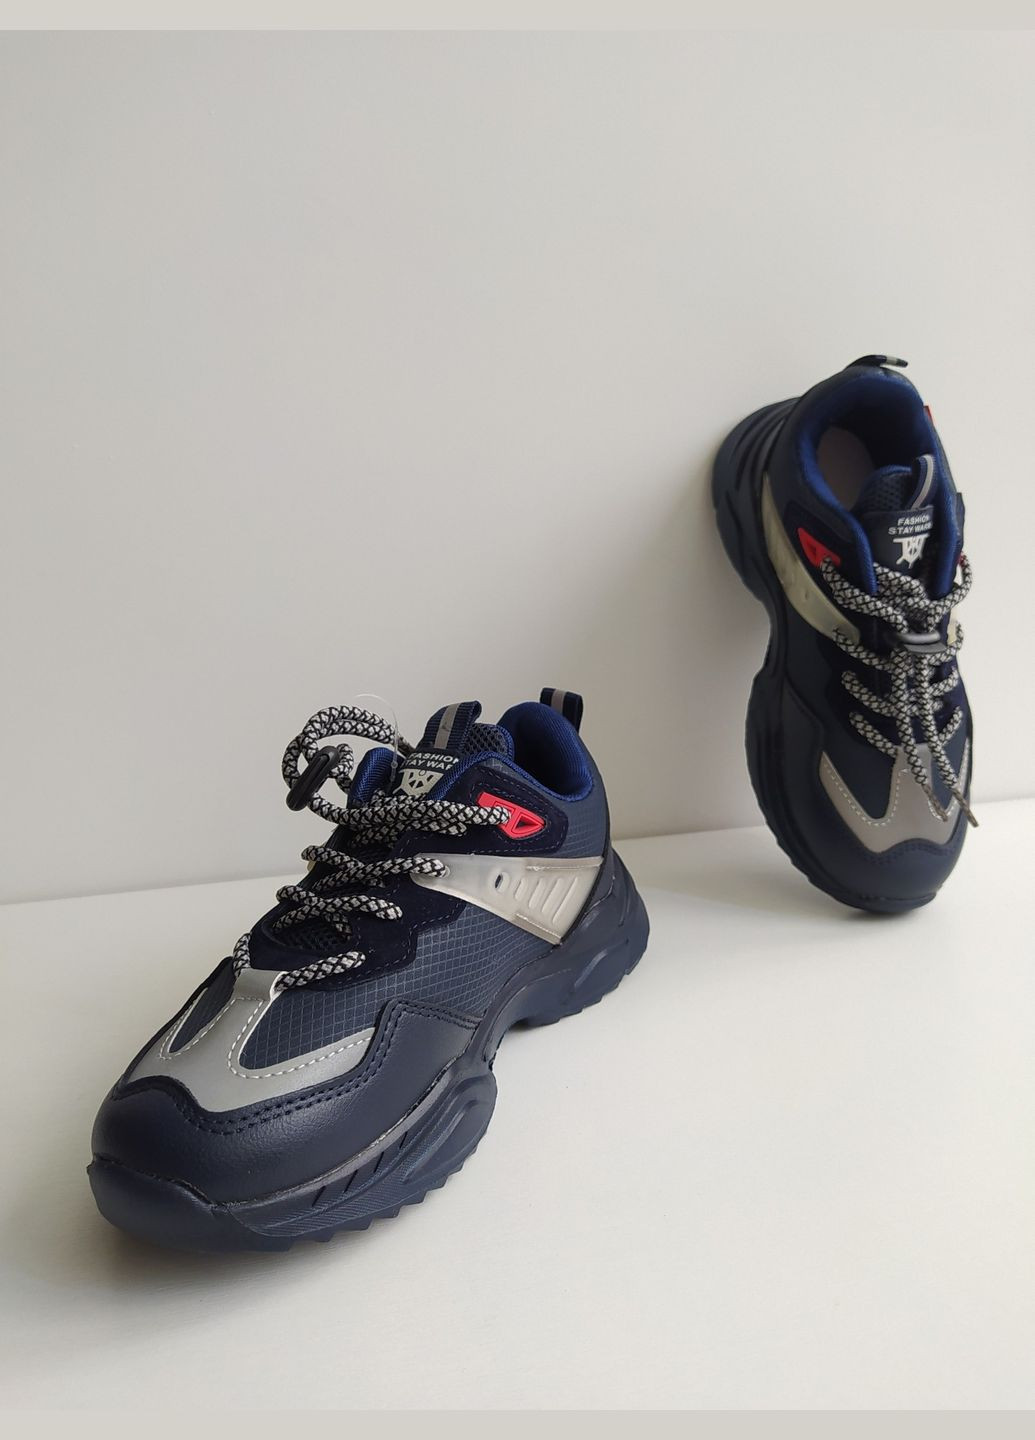 Синие детские кроссовки 31 г 19,8 см синий артикул к312 Jong Golf